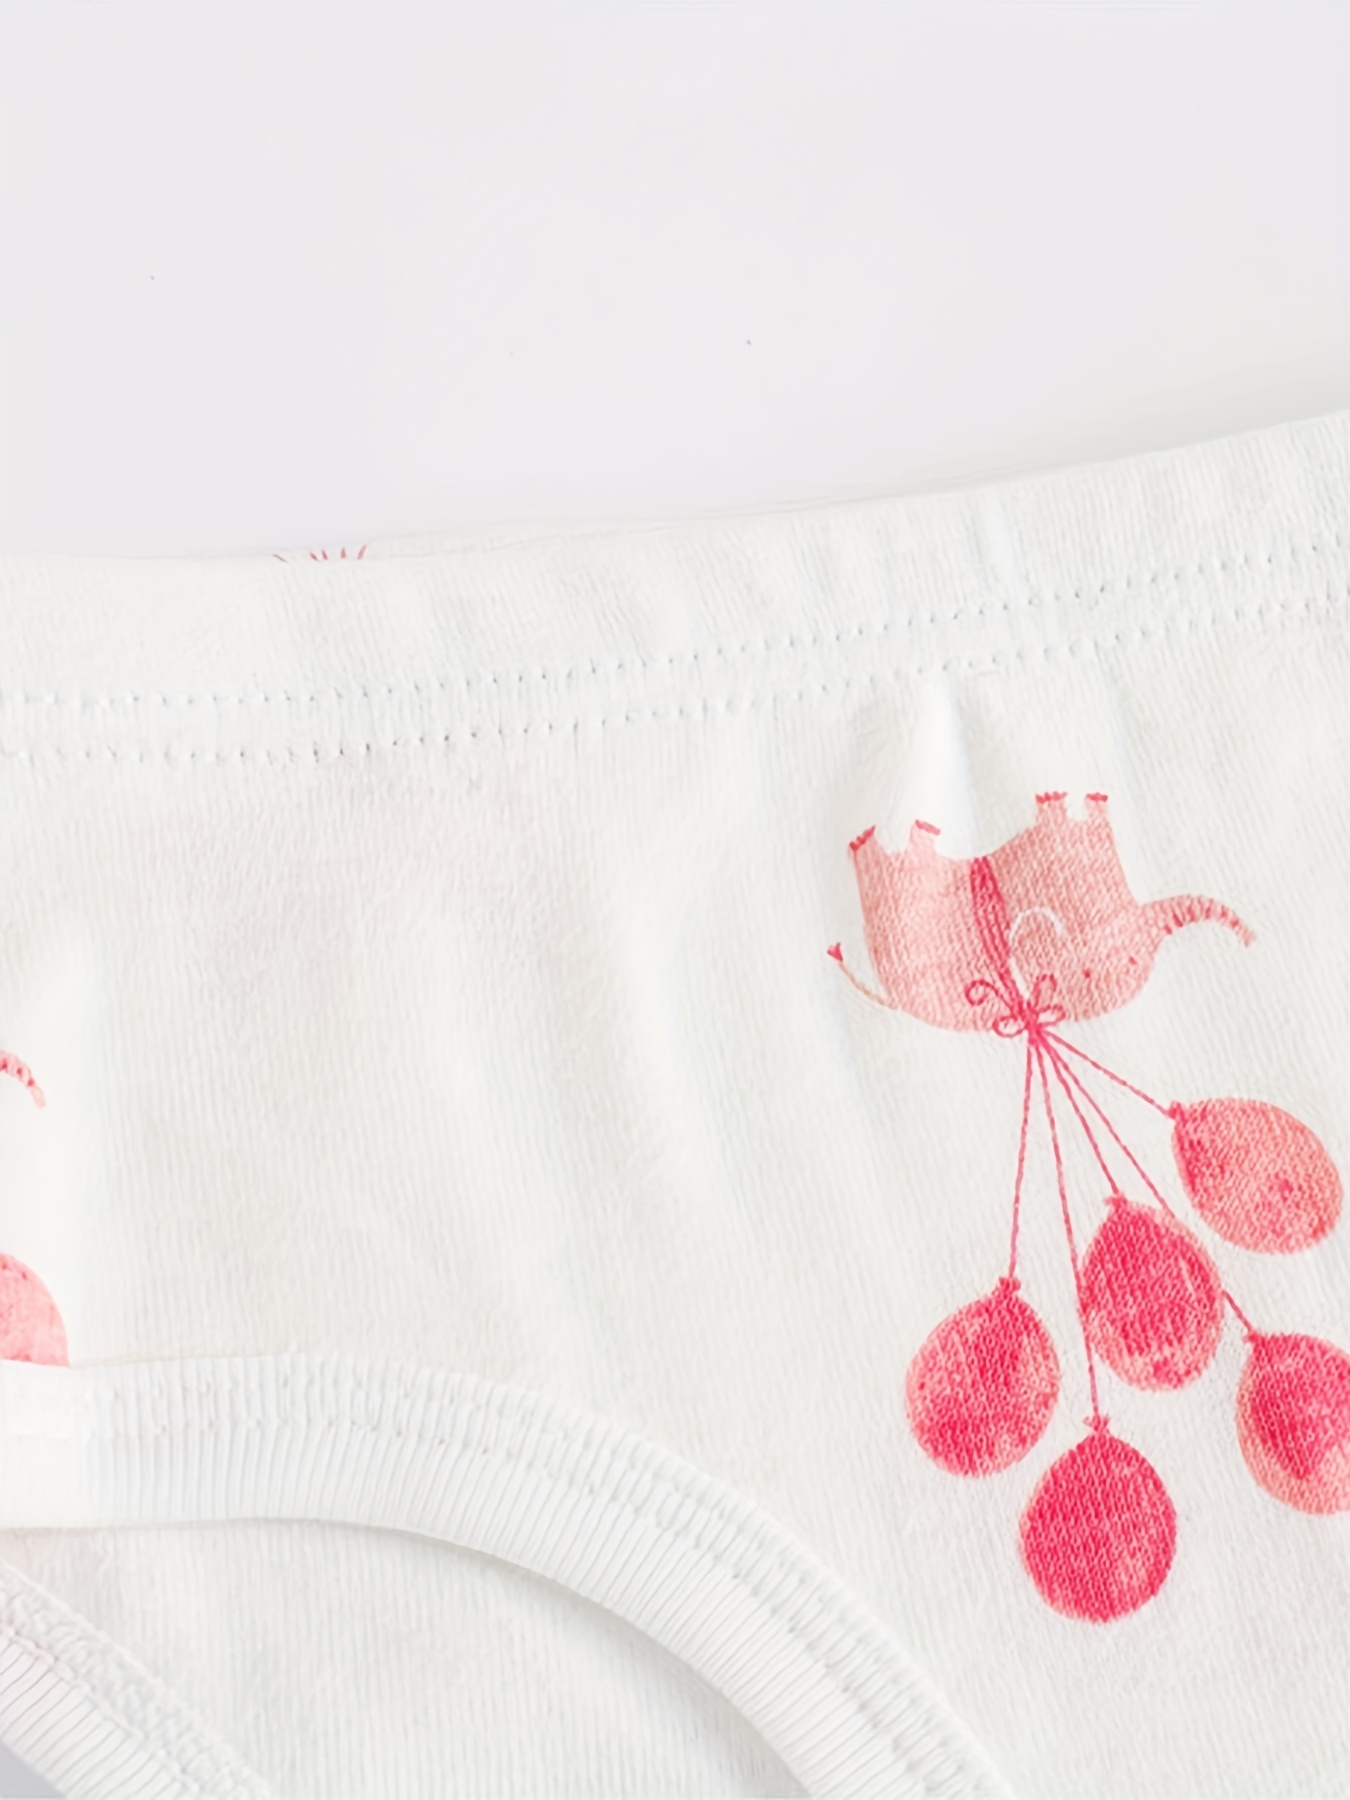 Buy Boboking Baby Soft Cotton Underwear Little Girls'Briefs Toddler Undies  Online at desertcartSeychelles